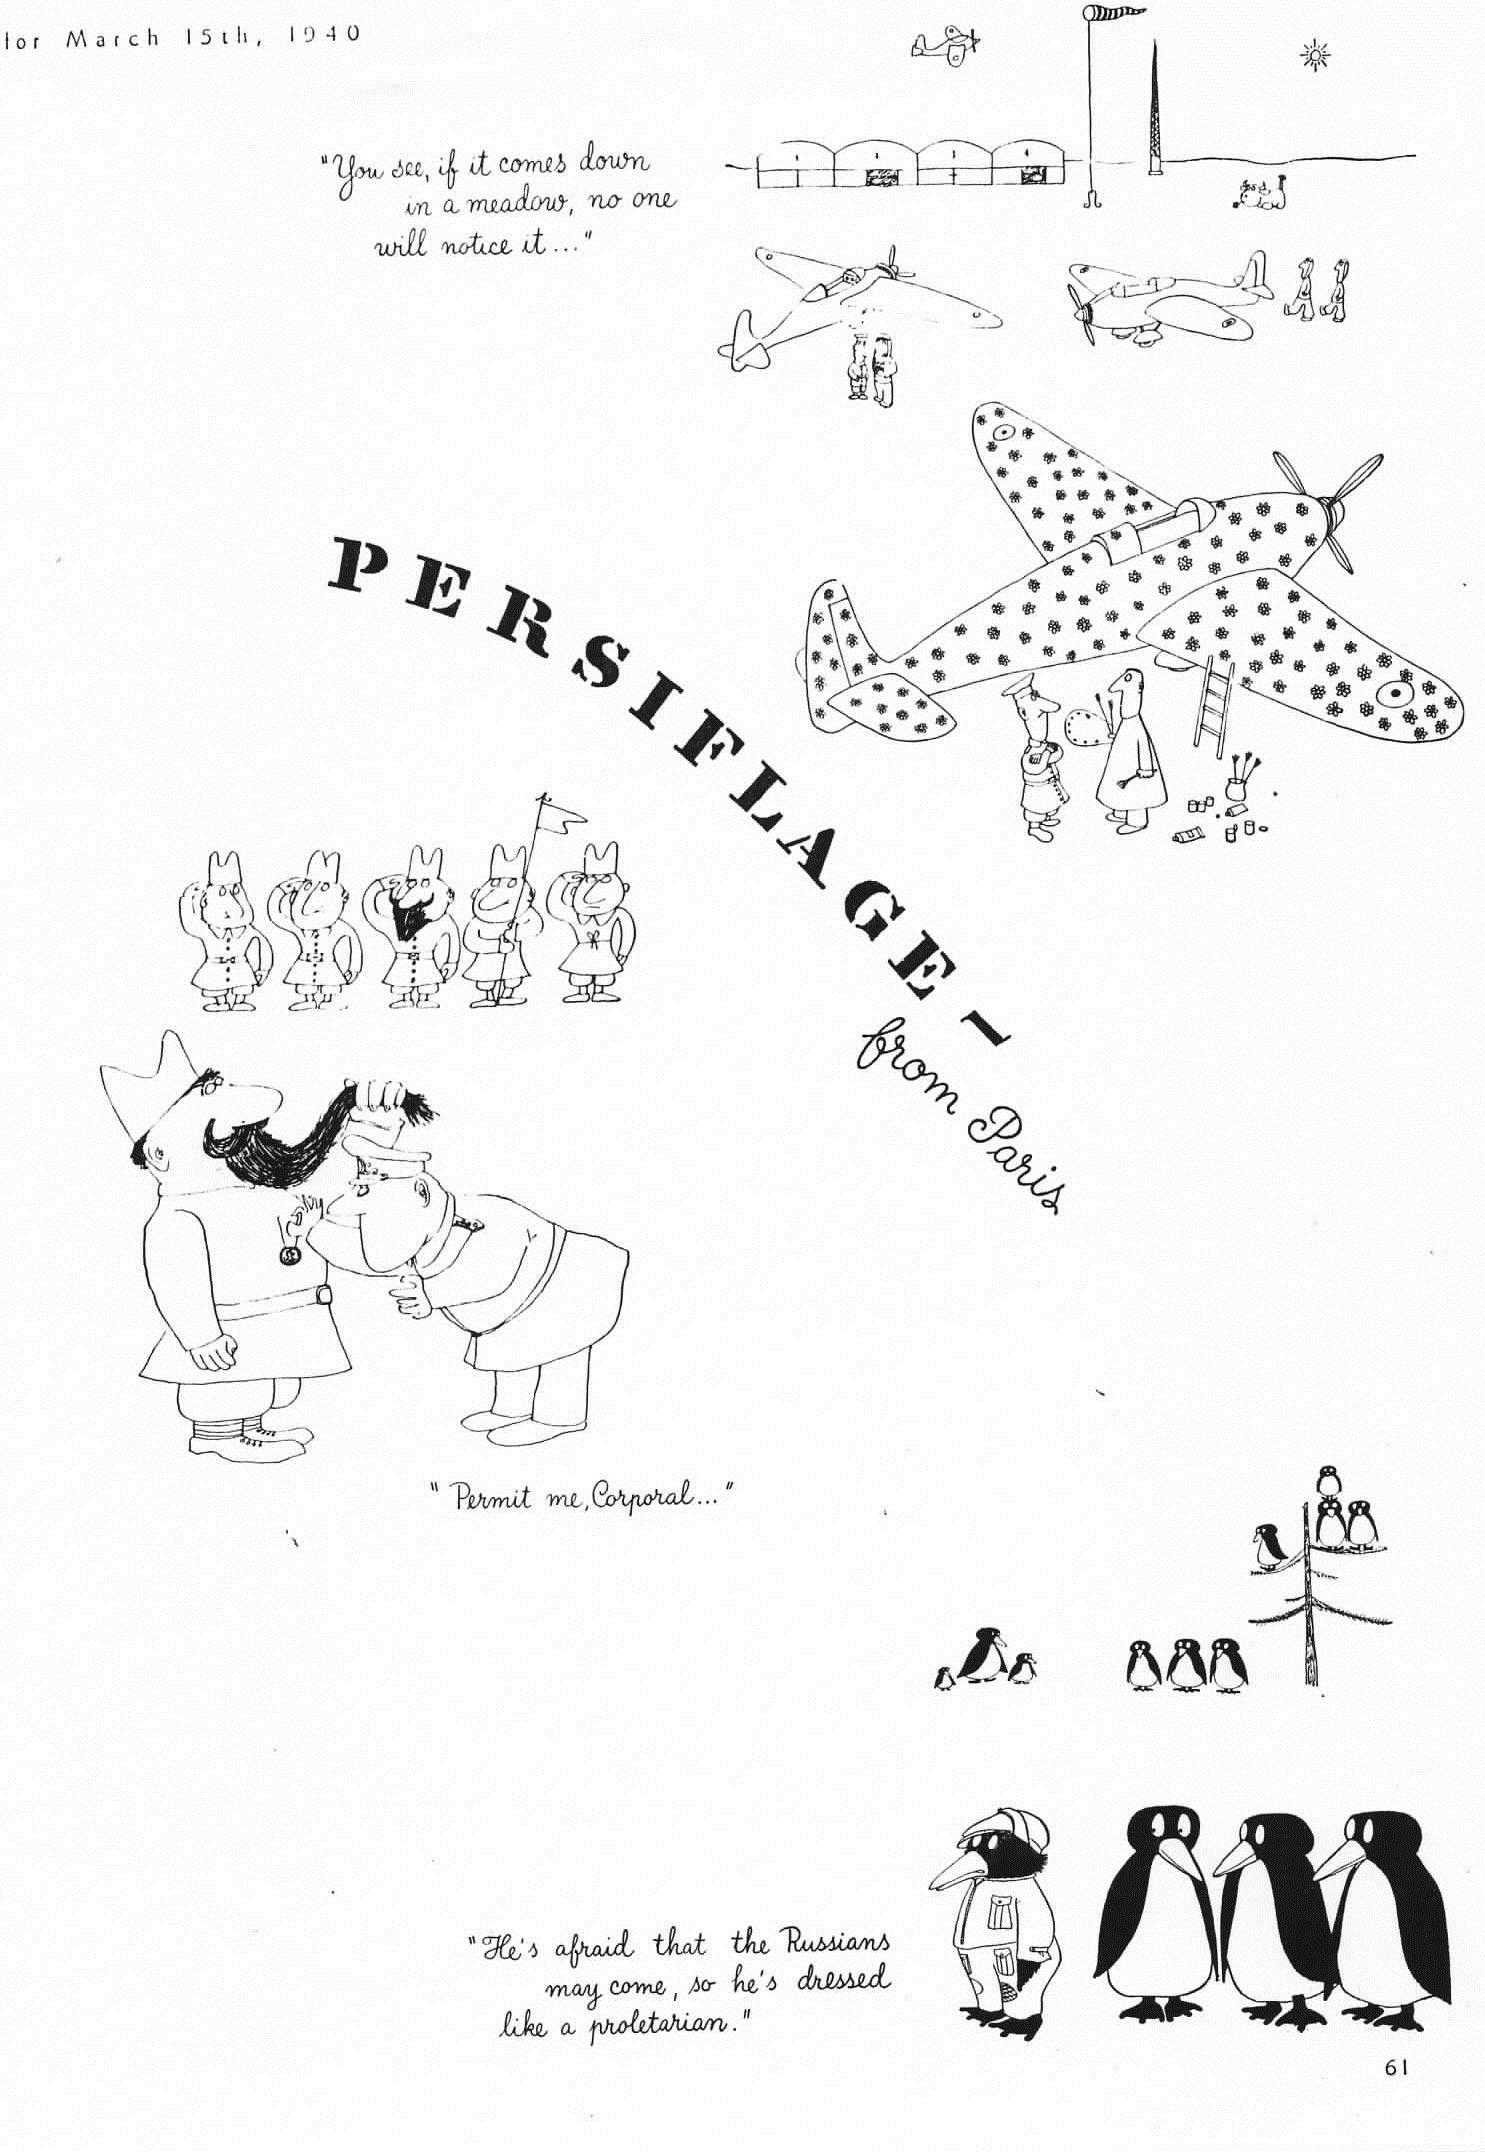 “Persiflage from Paris,” <em>Harper’s Bazaar</em>, March 15, 1940, pp. 60.